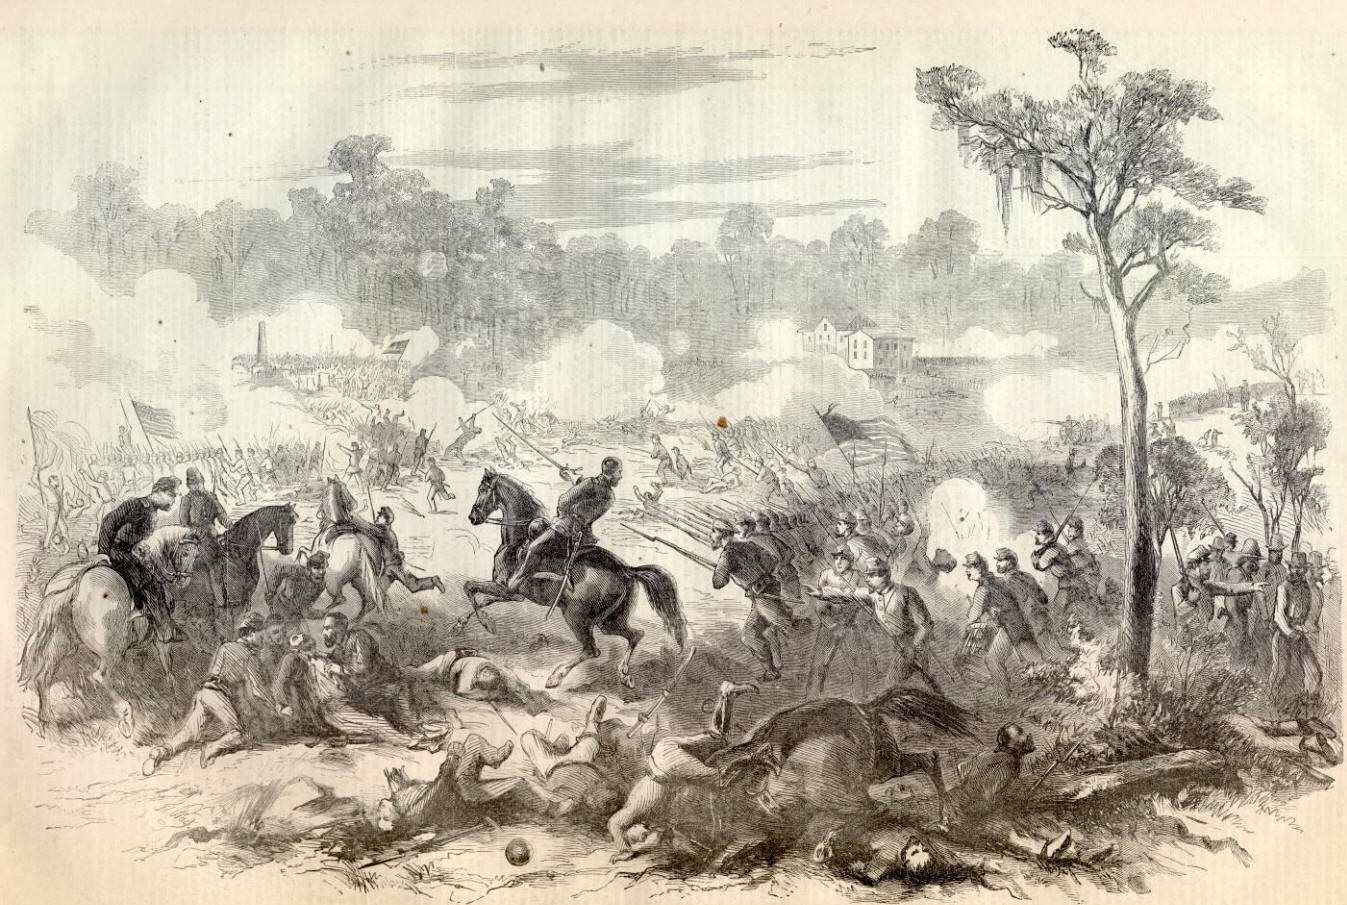 Battle of Baton Rouge